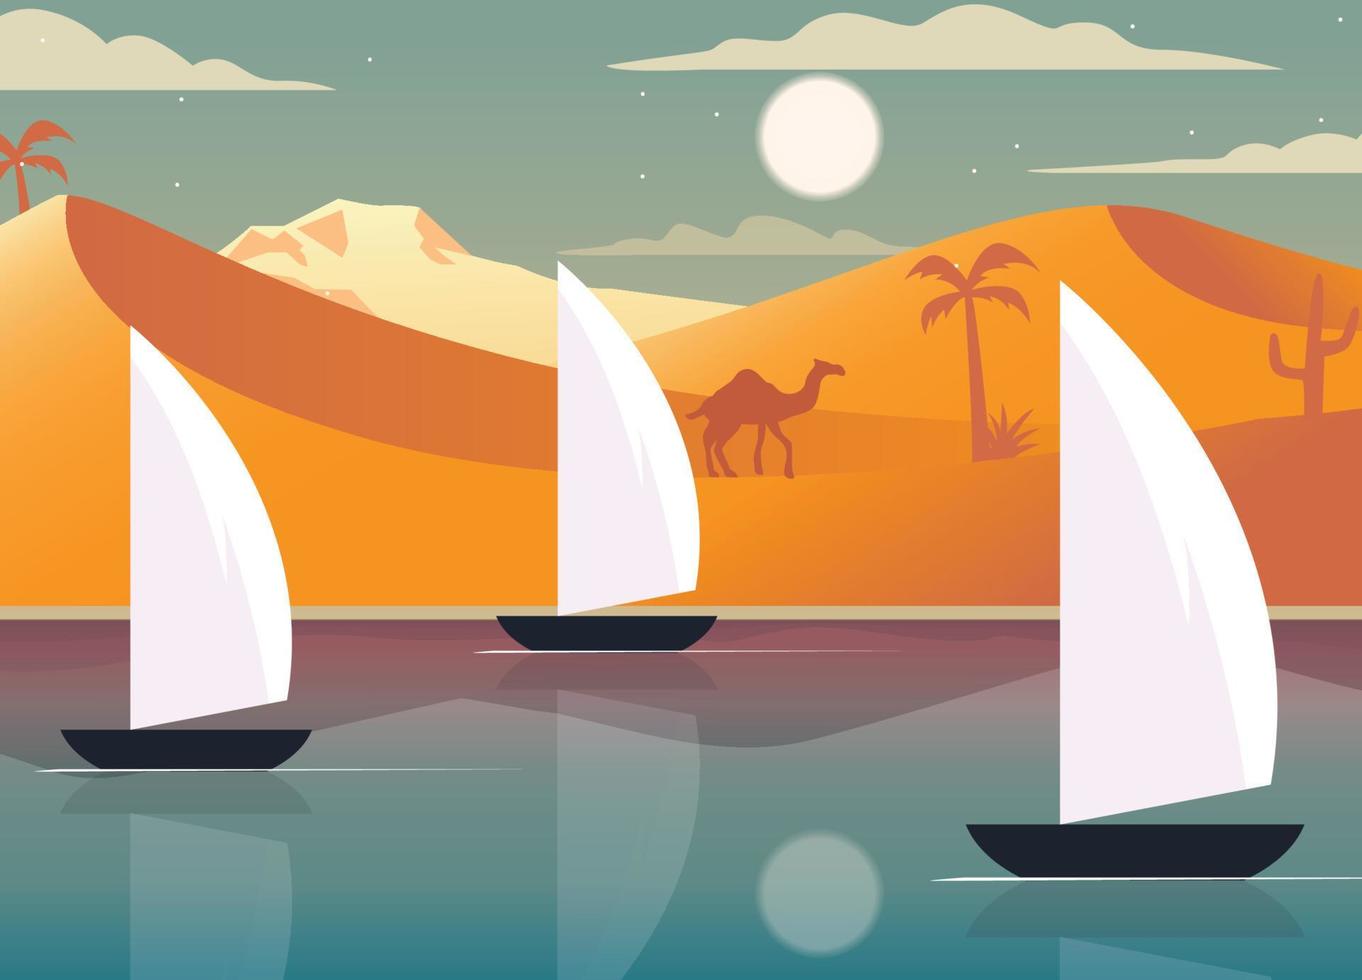 river in desert art landscape boats and dunes illustration vector